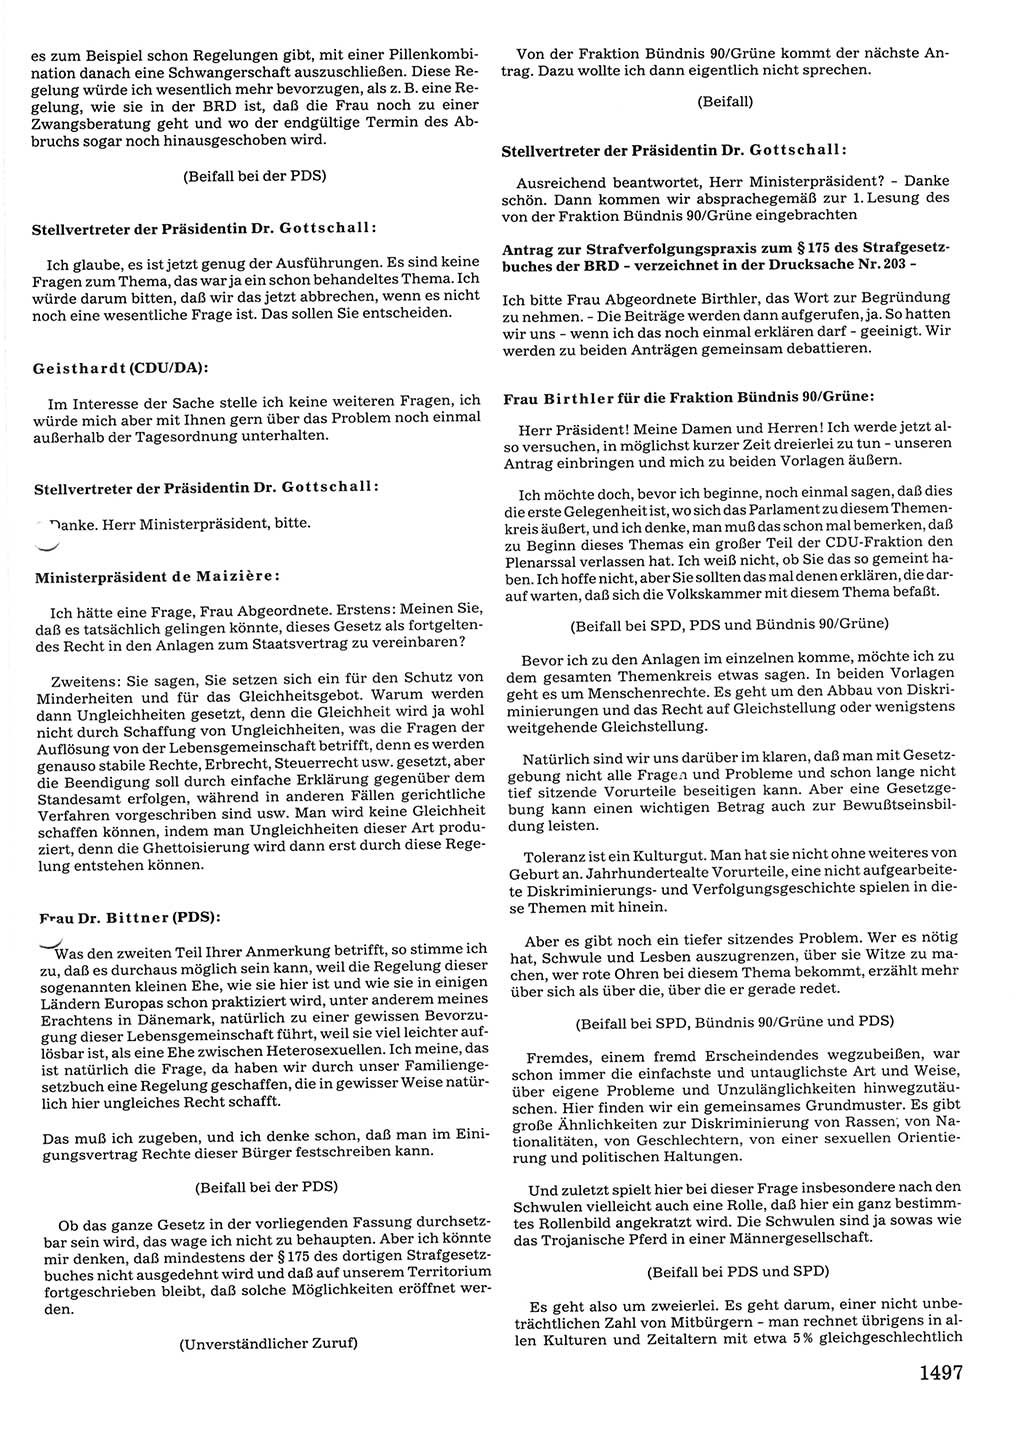 Tagungen der Volkskammer (VK) der Deutschen Demokratischen Republik (DDR), 10. Wahlperiode 1990, Seite 1497 (VK. DDR 10. WP. 1990, Prot. Tg. 1-38, 5.4.-2.10.1990, S. 1497)